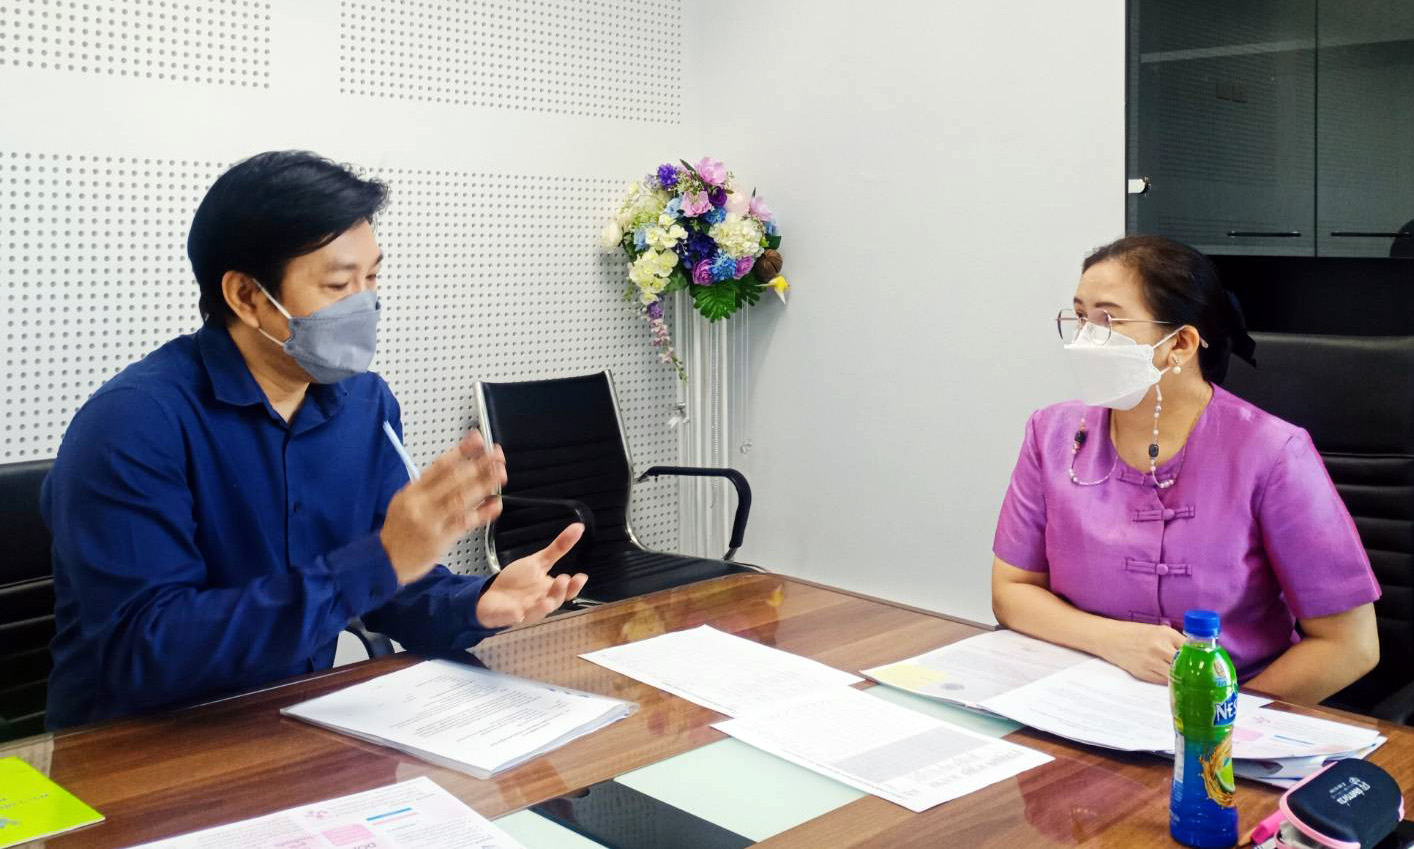 ผู้เชี่ยวชาญเฉพาะด้านผู้สูงอายุ ใหเสัมภาษณ์ ในประเด็น เรื่อง รูปแบบการเรียนรู้เพื่อการพัฒนาสุขภาวะทางไซเบอร์ของผู้สูงอายุไทย